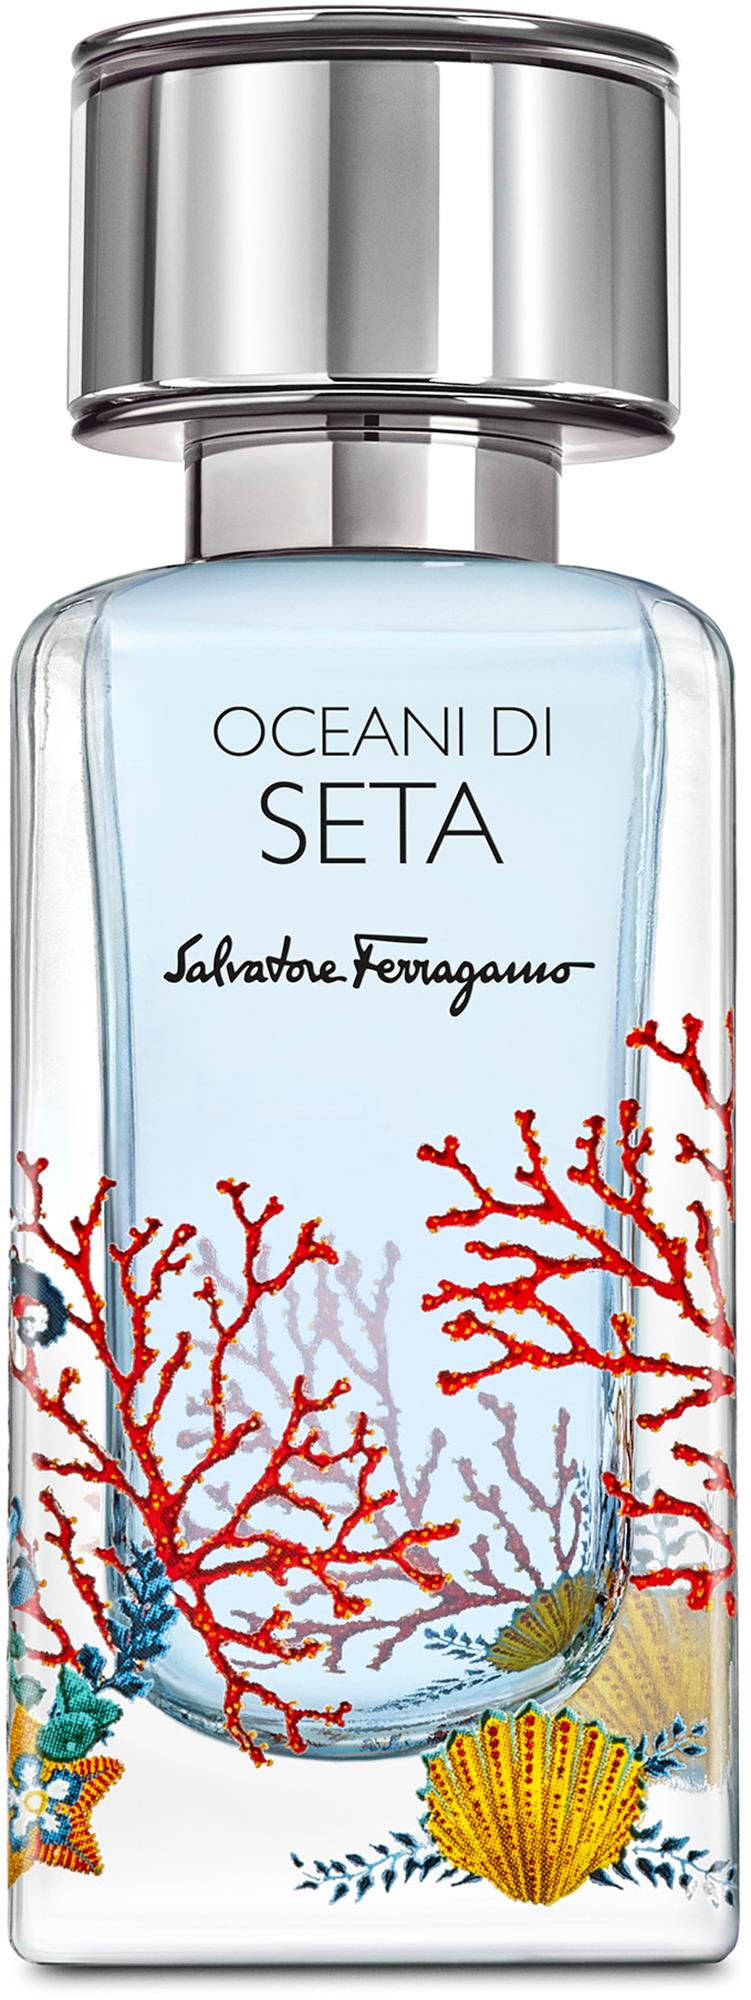 Salvatore Ferragamo Oceani di ml 50 de Seta Eau Parfum